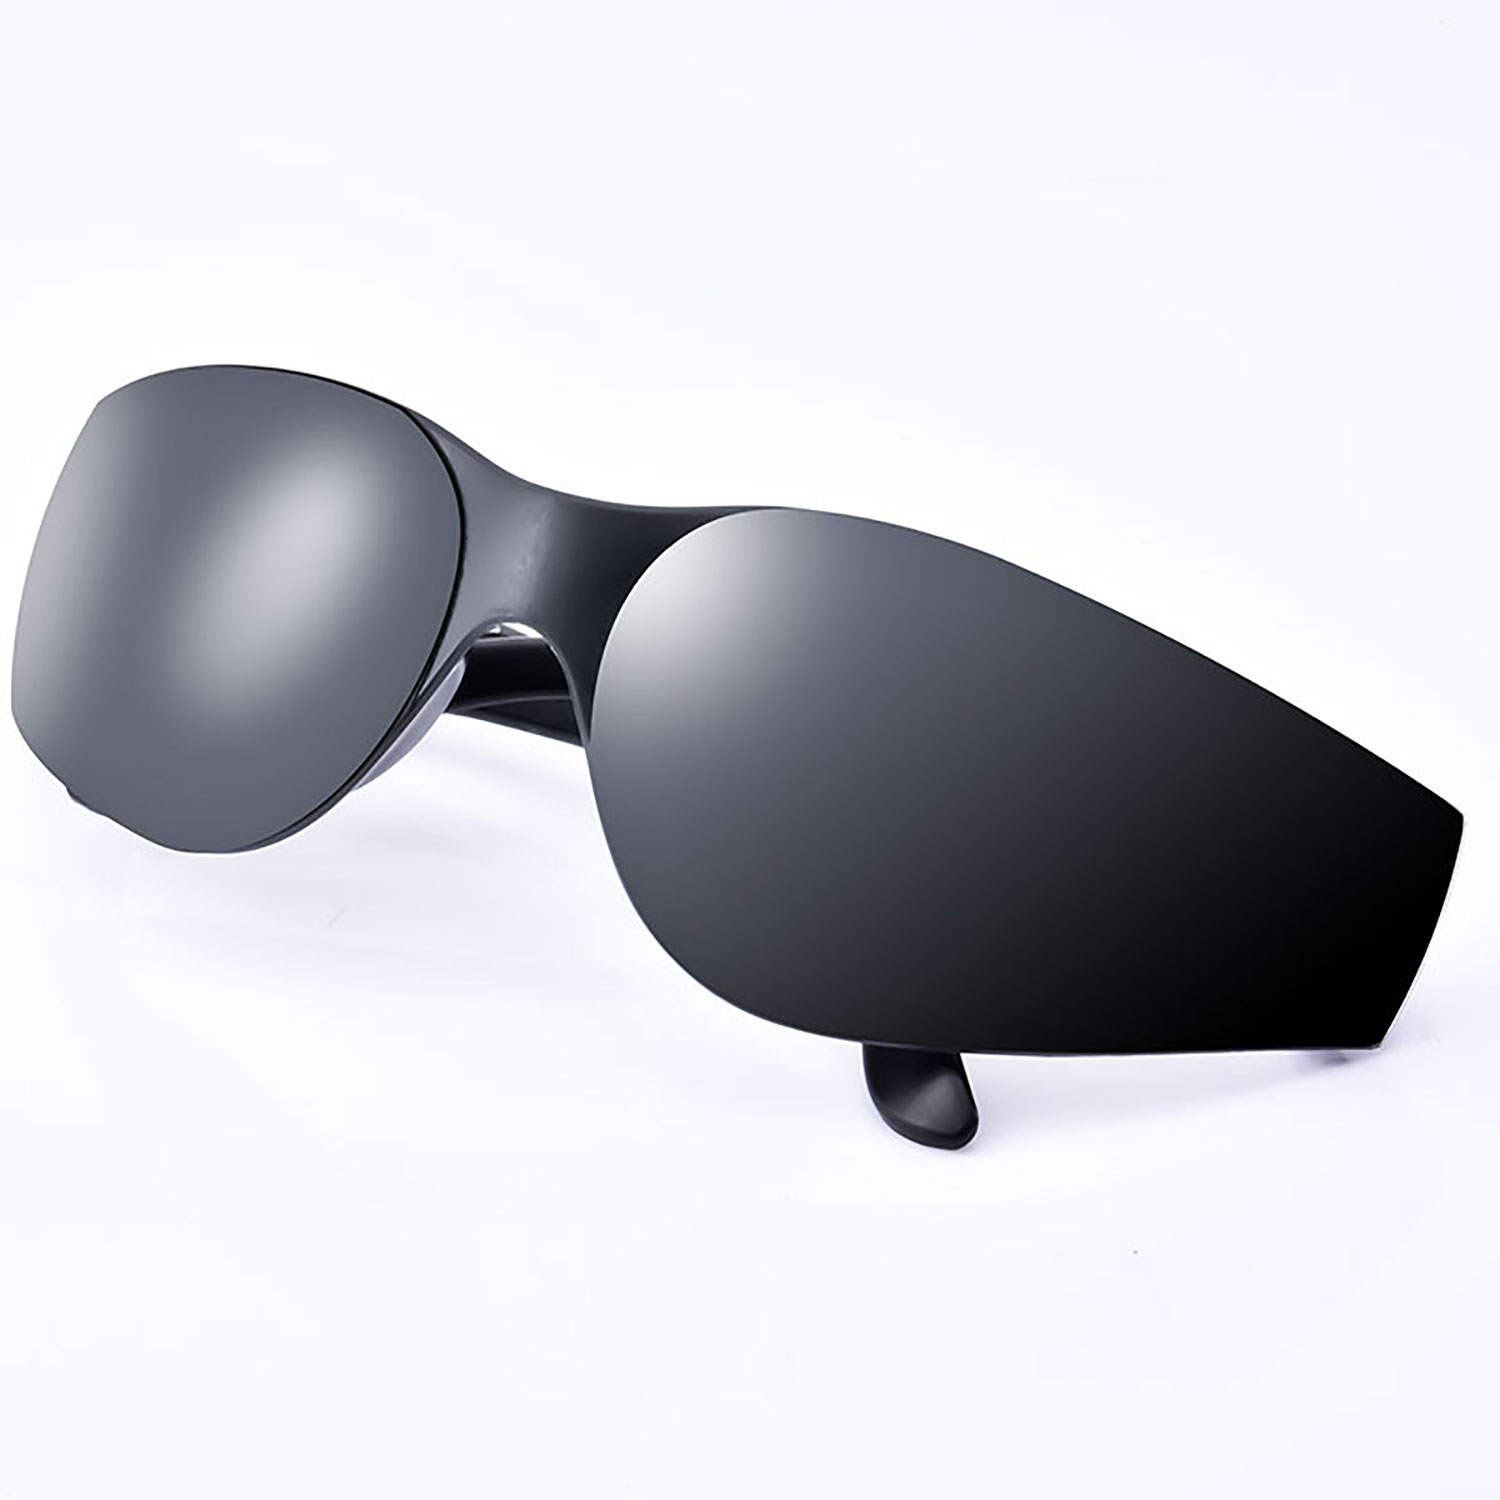 Ready Stock Gafas de sol protectoras SG001 Negro